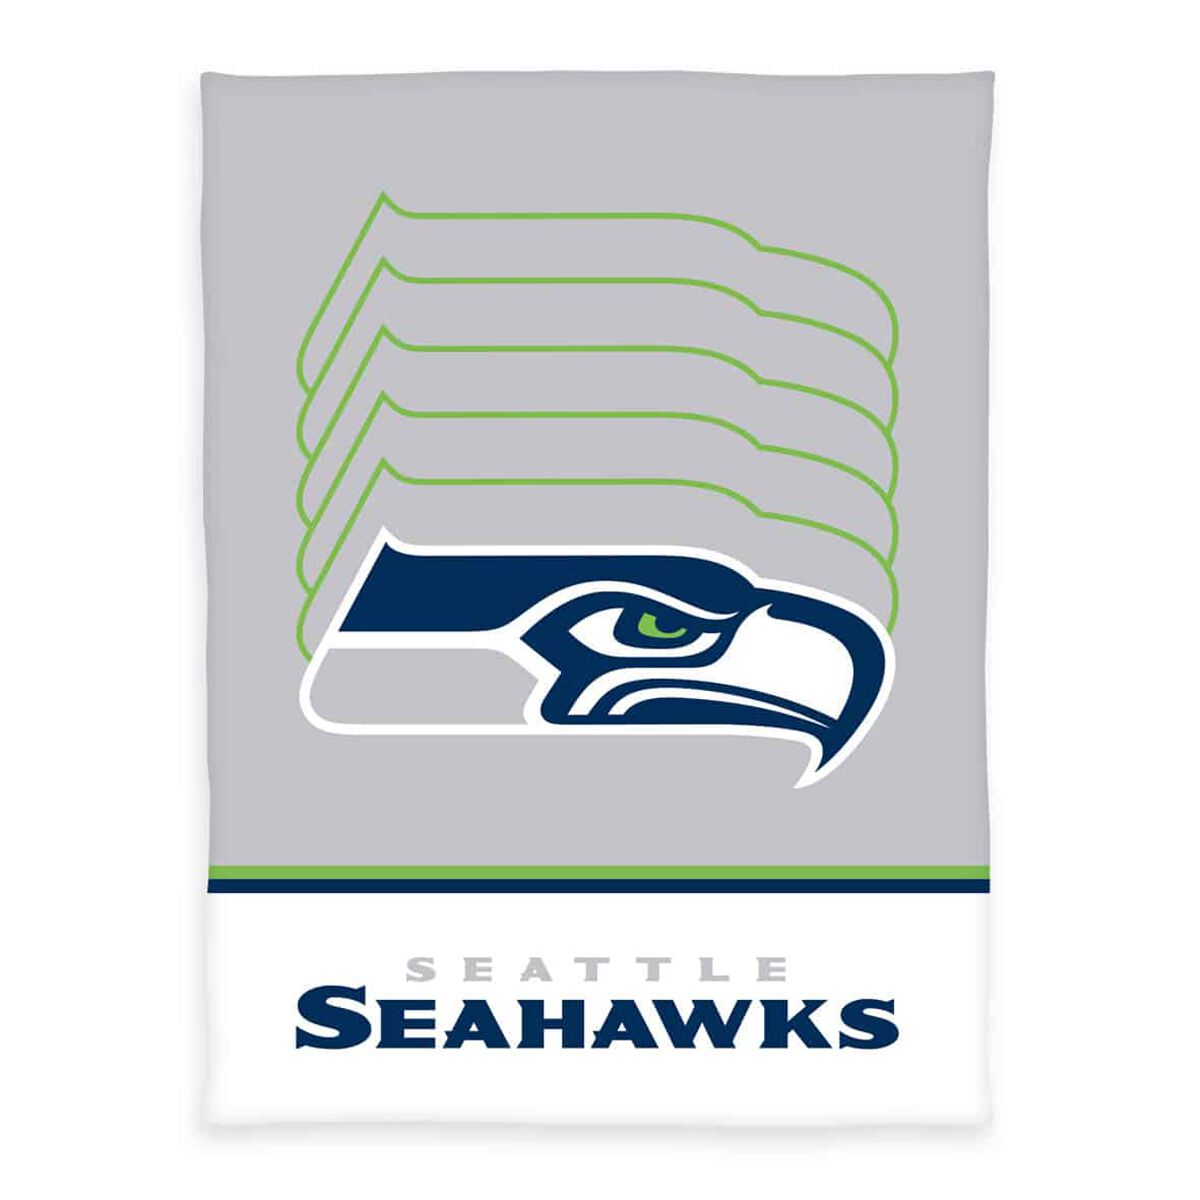 NFL Decke - Seattle Seahawks - Flauschdecke - multicolor